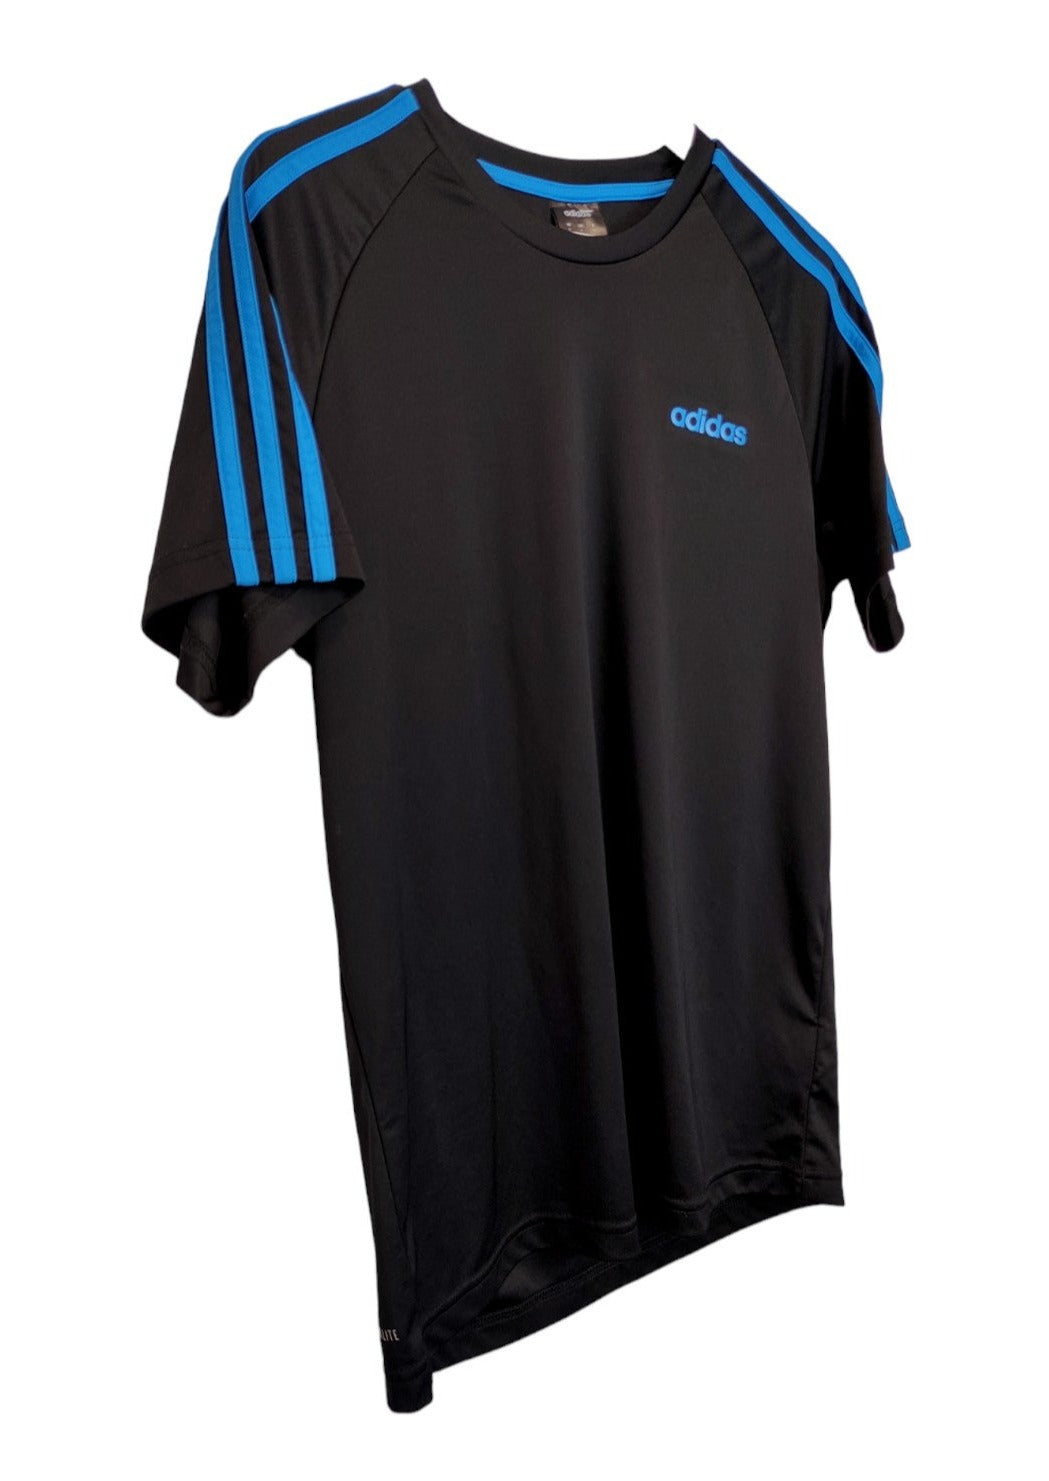 Αθλητική Ανδρική Μπλούζα - T-Shirt ADIDAS σε Μαύρο χρώμα (Medium)